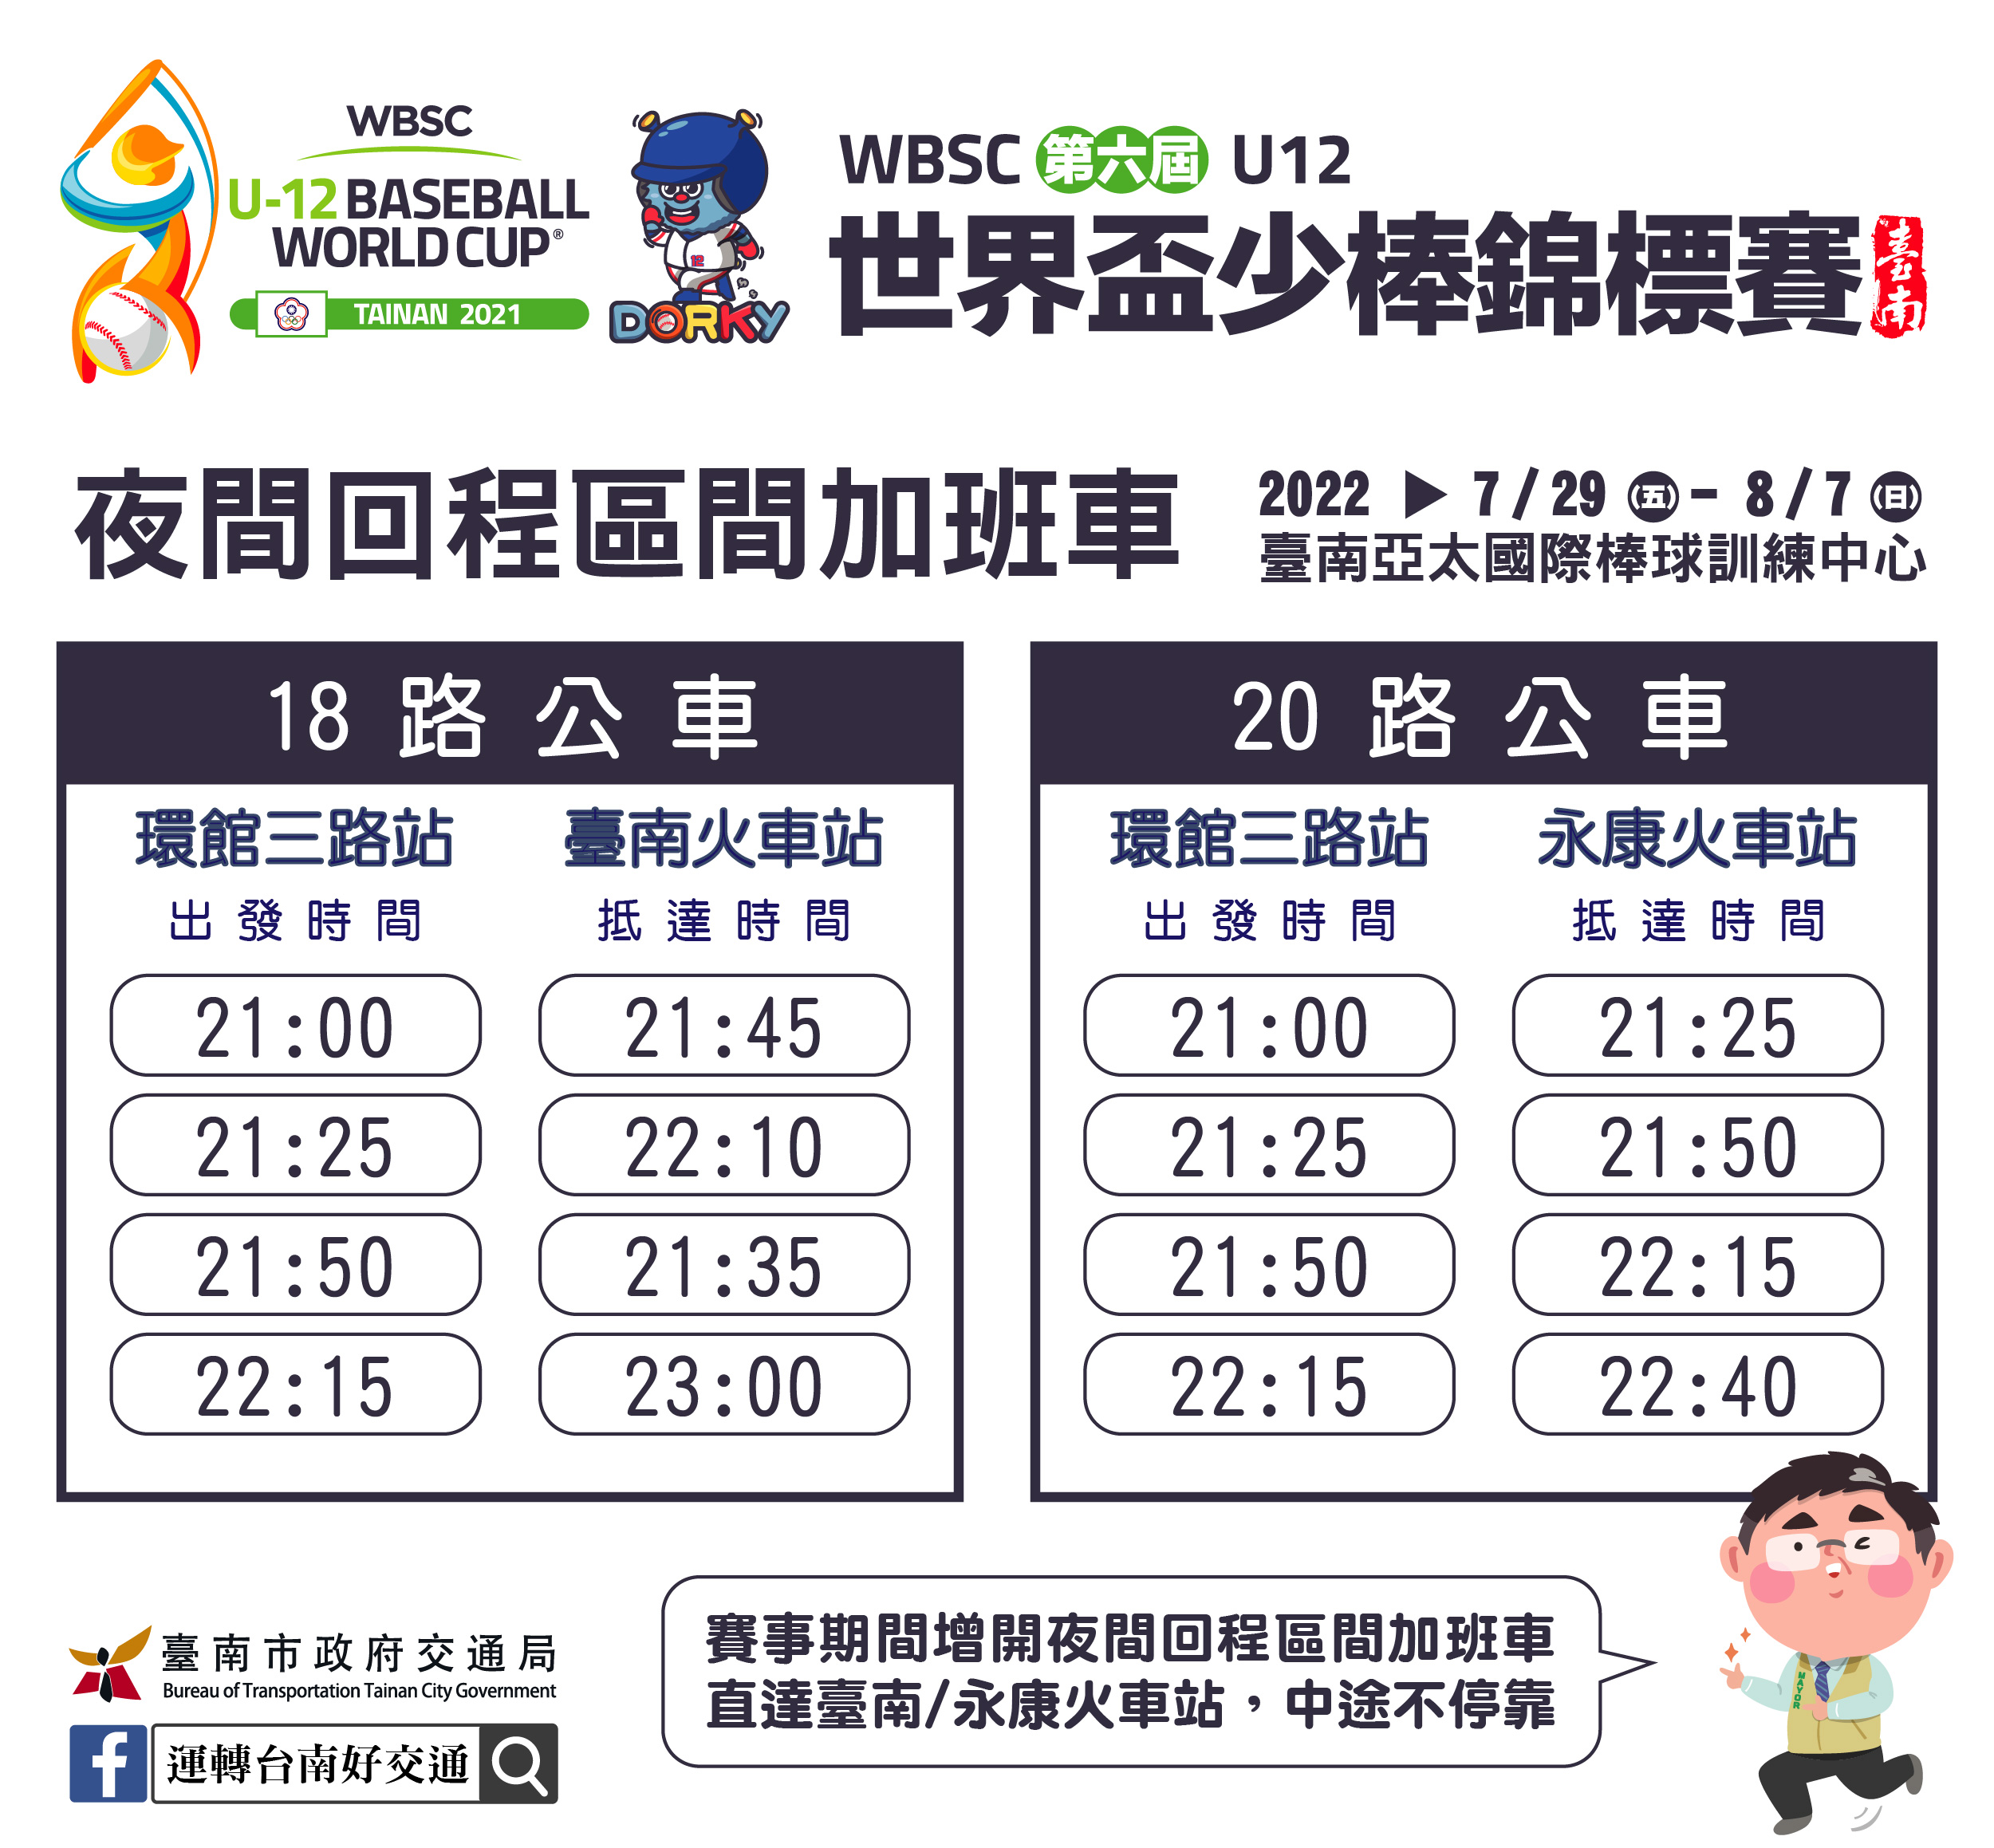 掌握世界盃少棒賽交通資訊  臺南市政府邀請您一起為中華隊加油